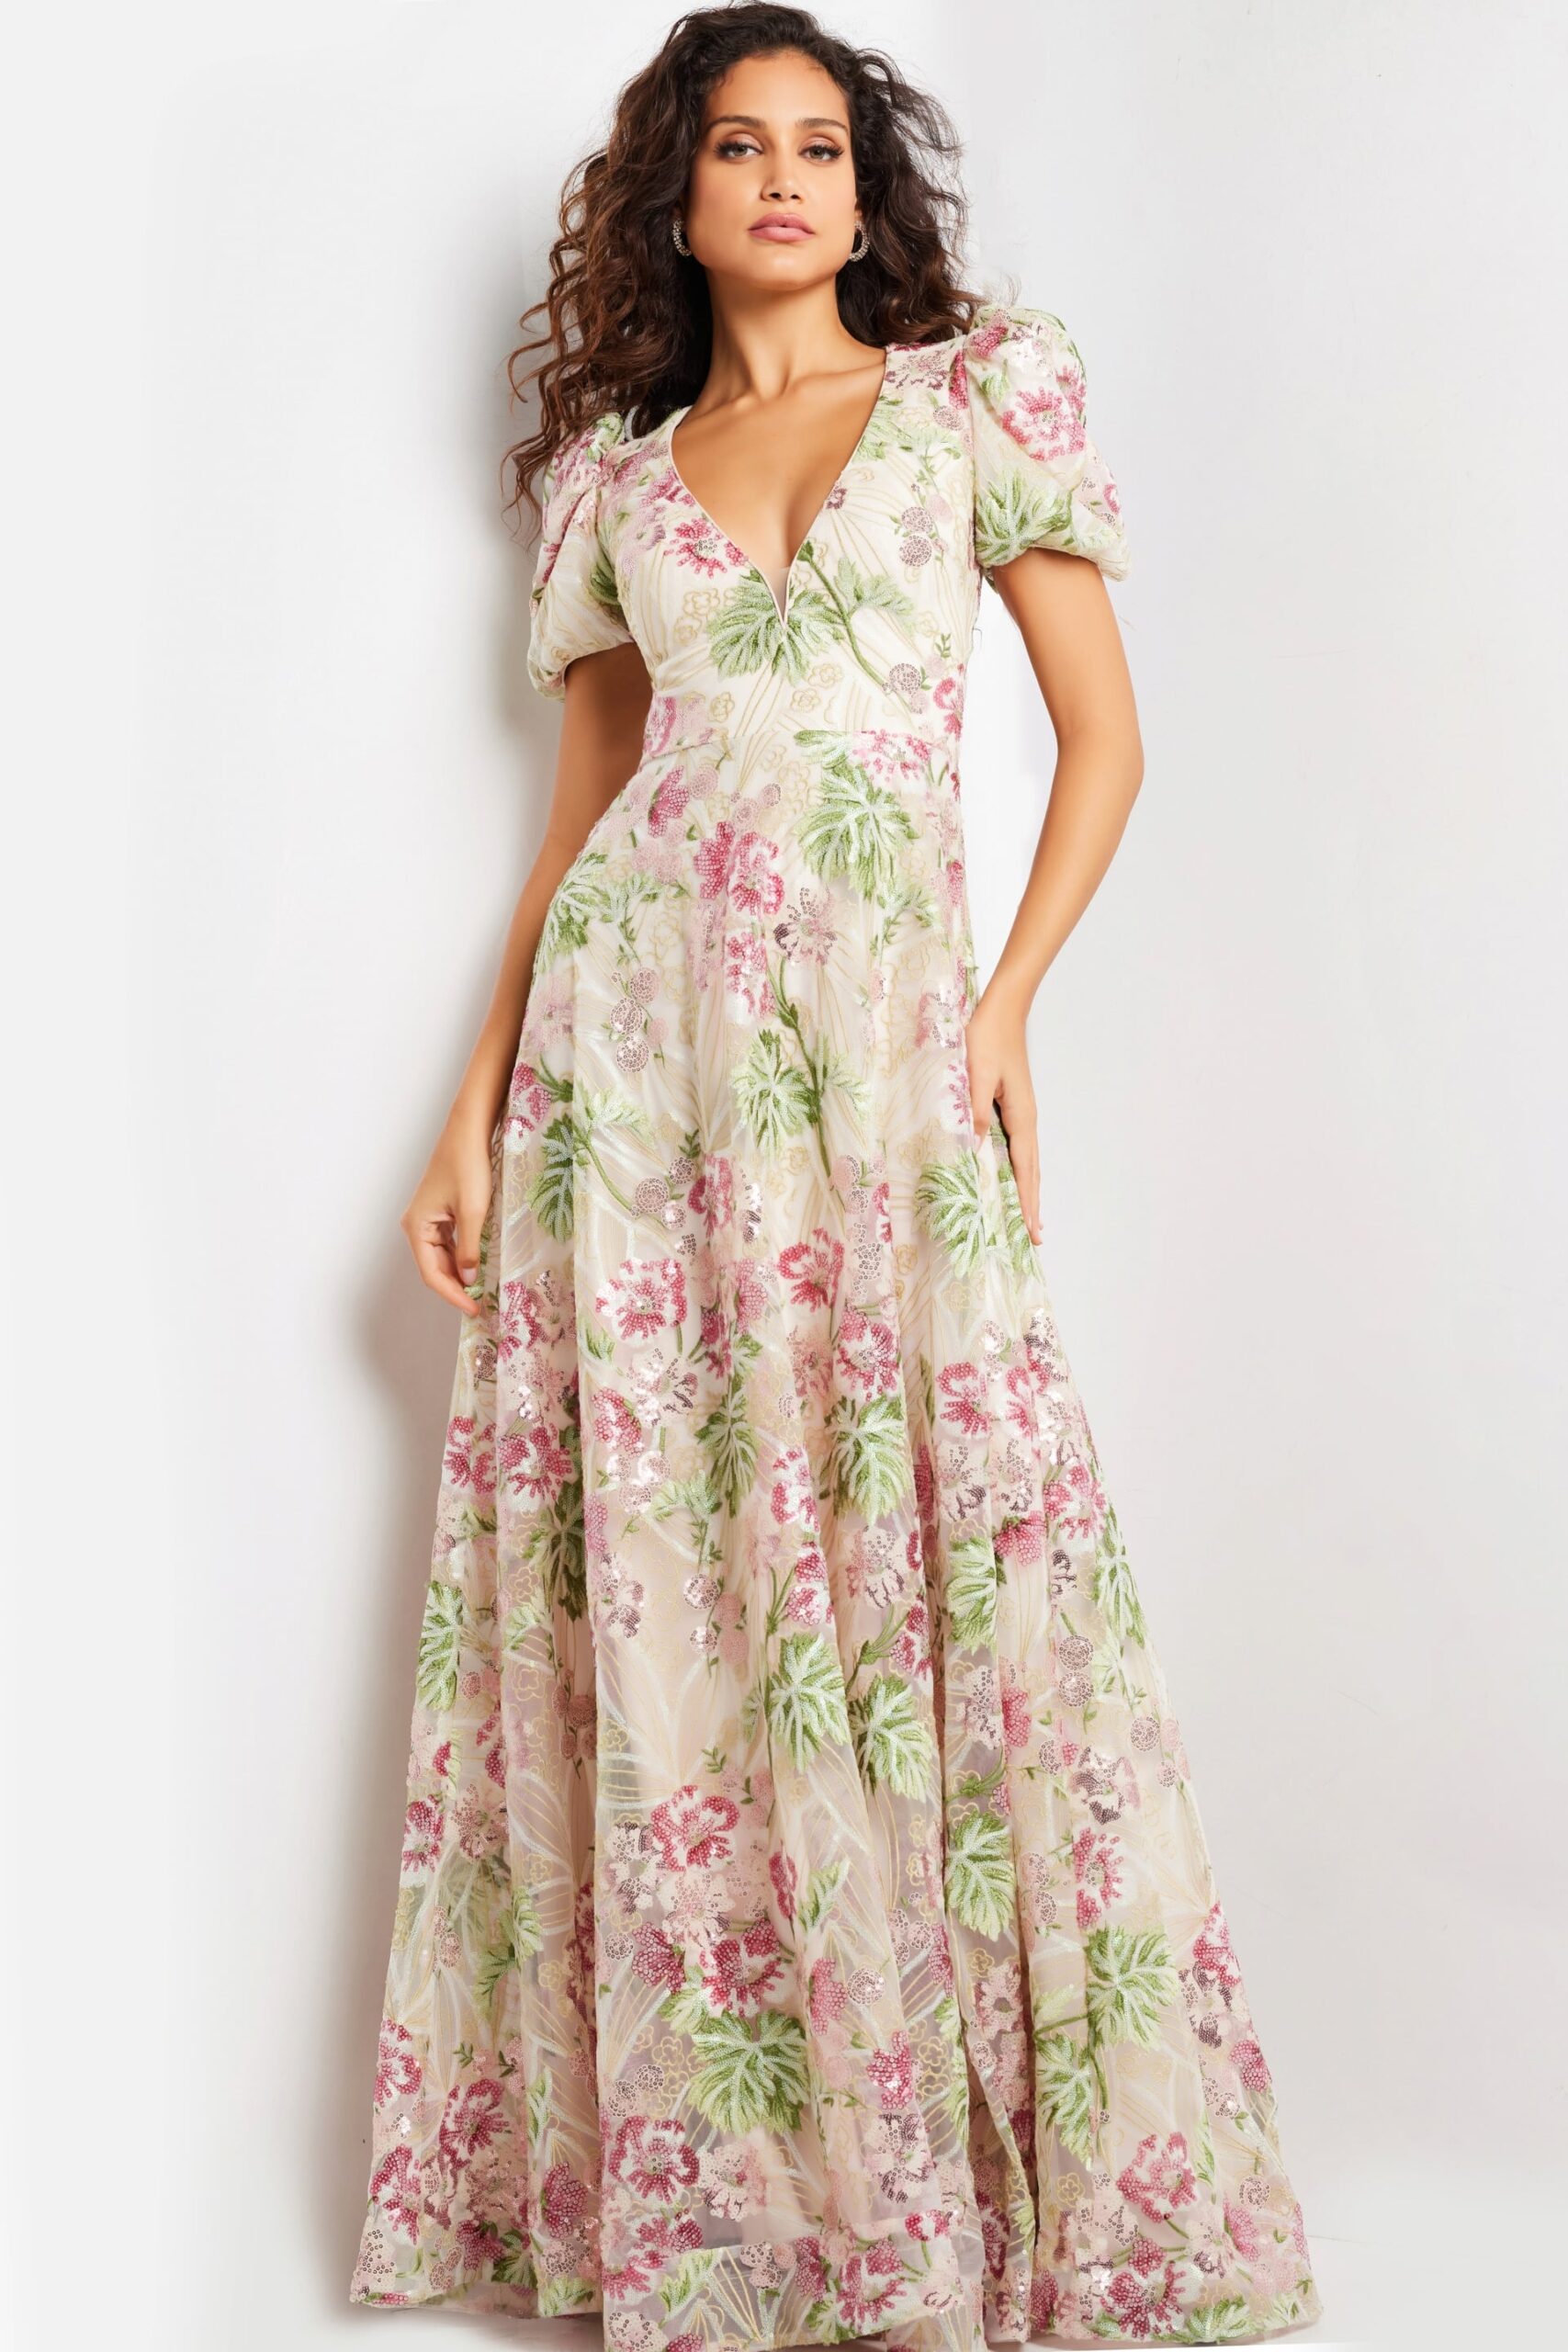 Multi Color Short Sleeve Floral Dress 37636